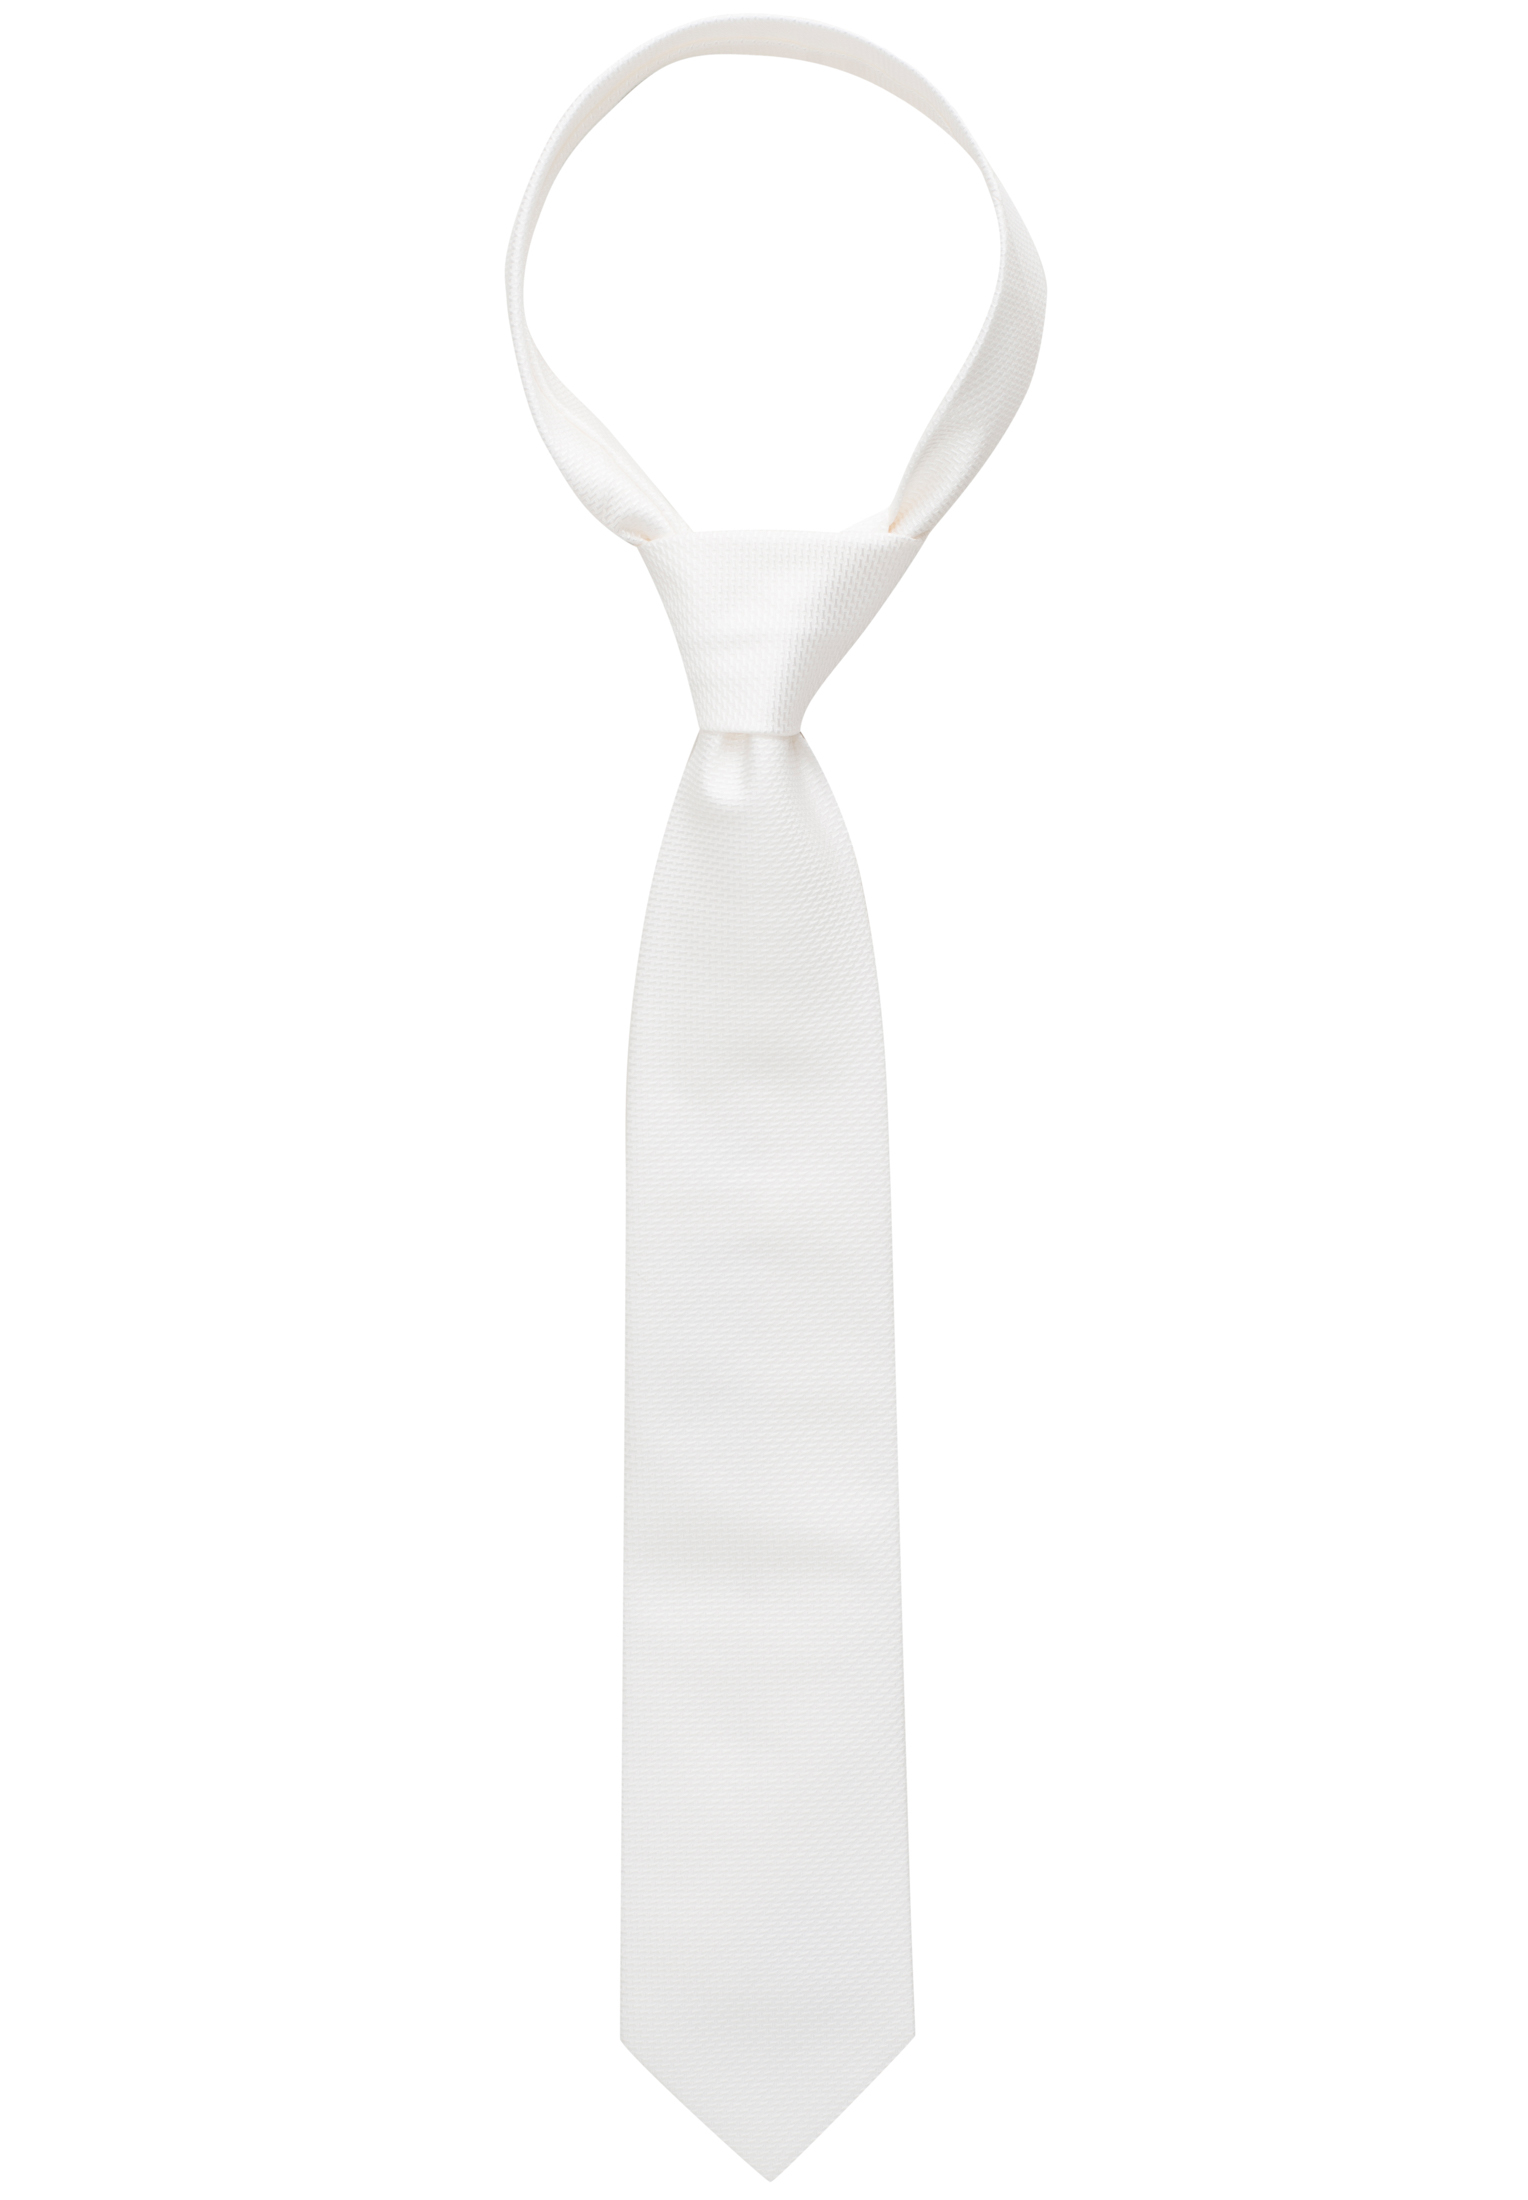 Krawatte in weiß strukturiert | | 1AC01866-00-01-160 | weiß 160